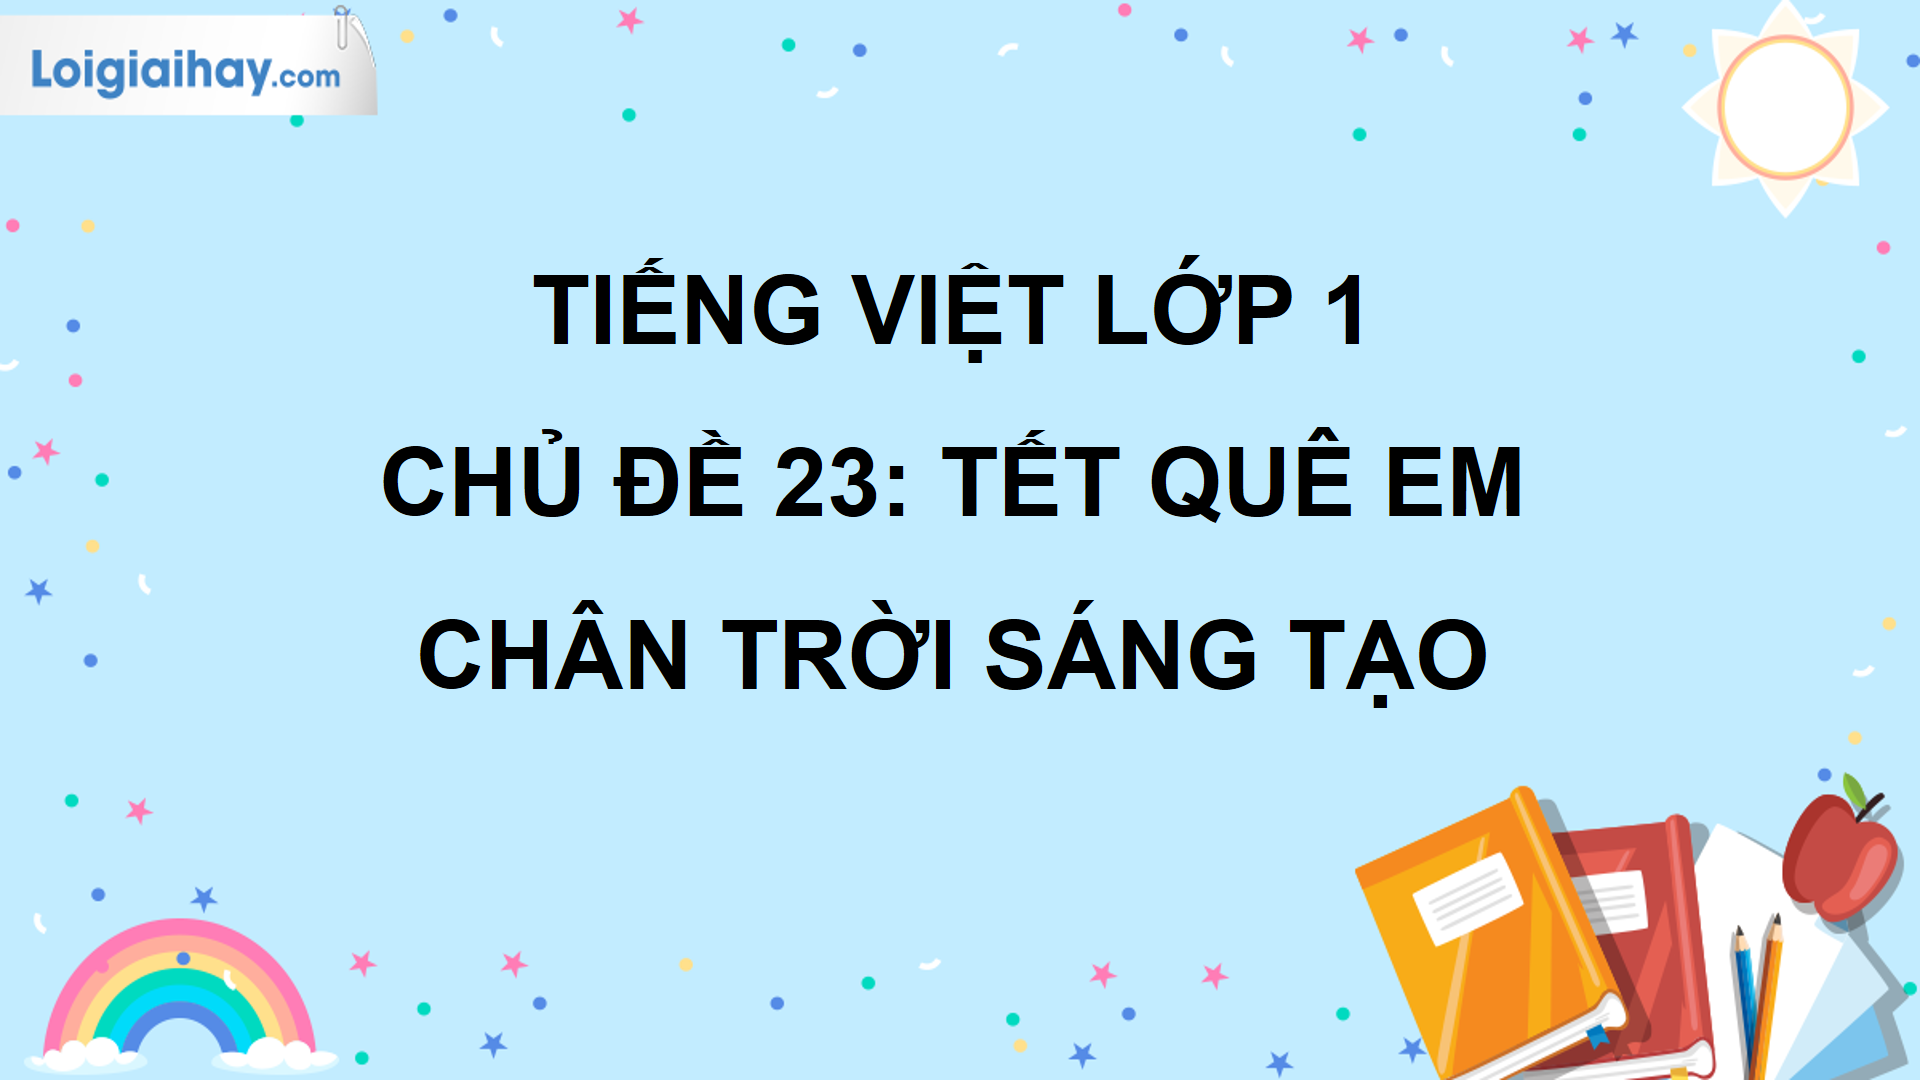 Tiếng Việt lớp 1: Chủ đề 23 Tết quê em